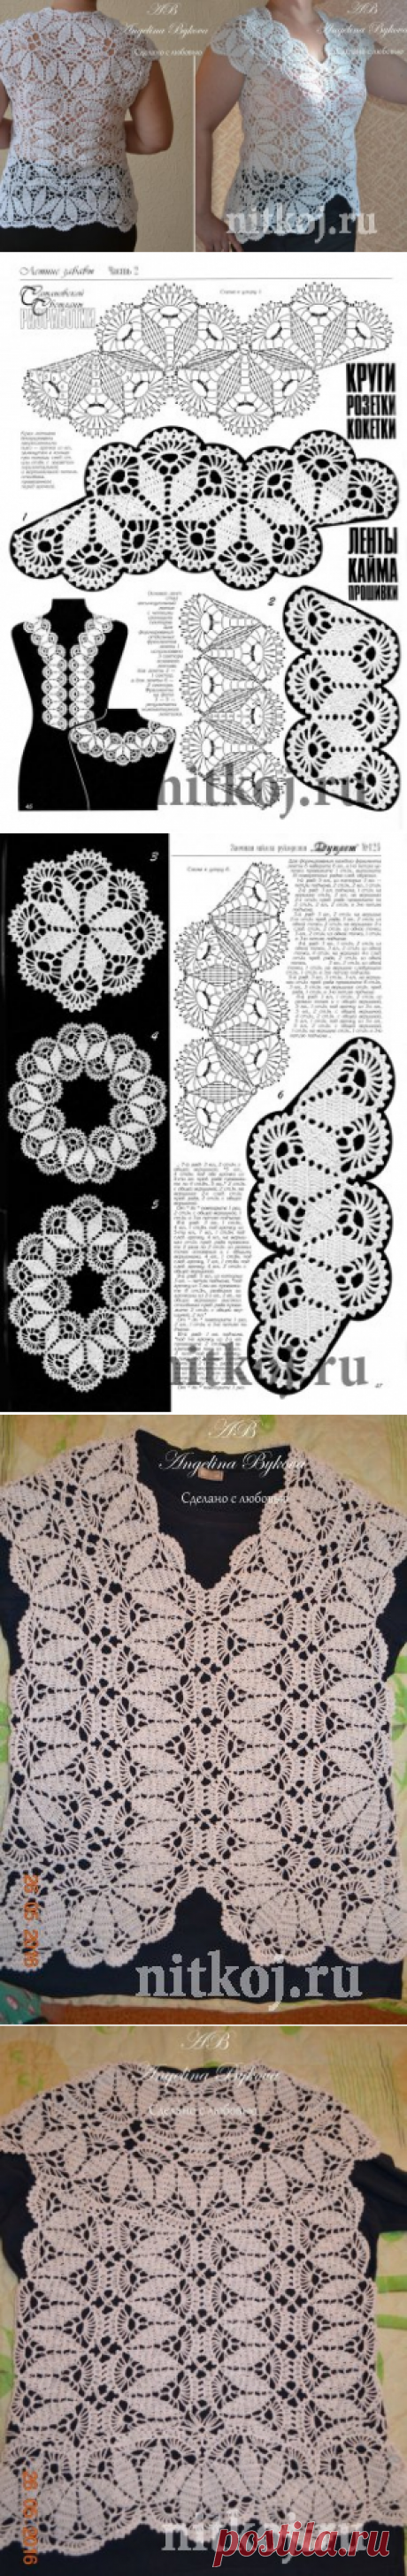 Красивая блузка крючком от Ангелины Быковой » Ниткой - вязаные вещи для вашего дома, вязание крючком, вязание спицами, схемы вязания